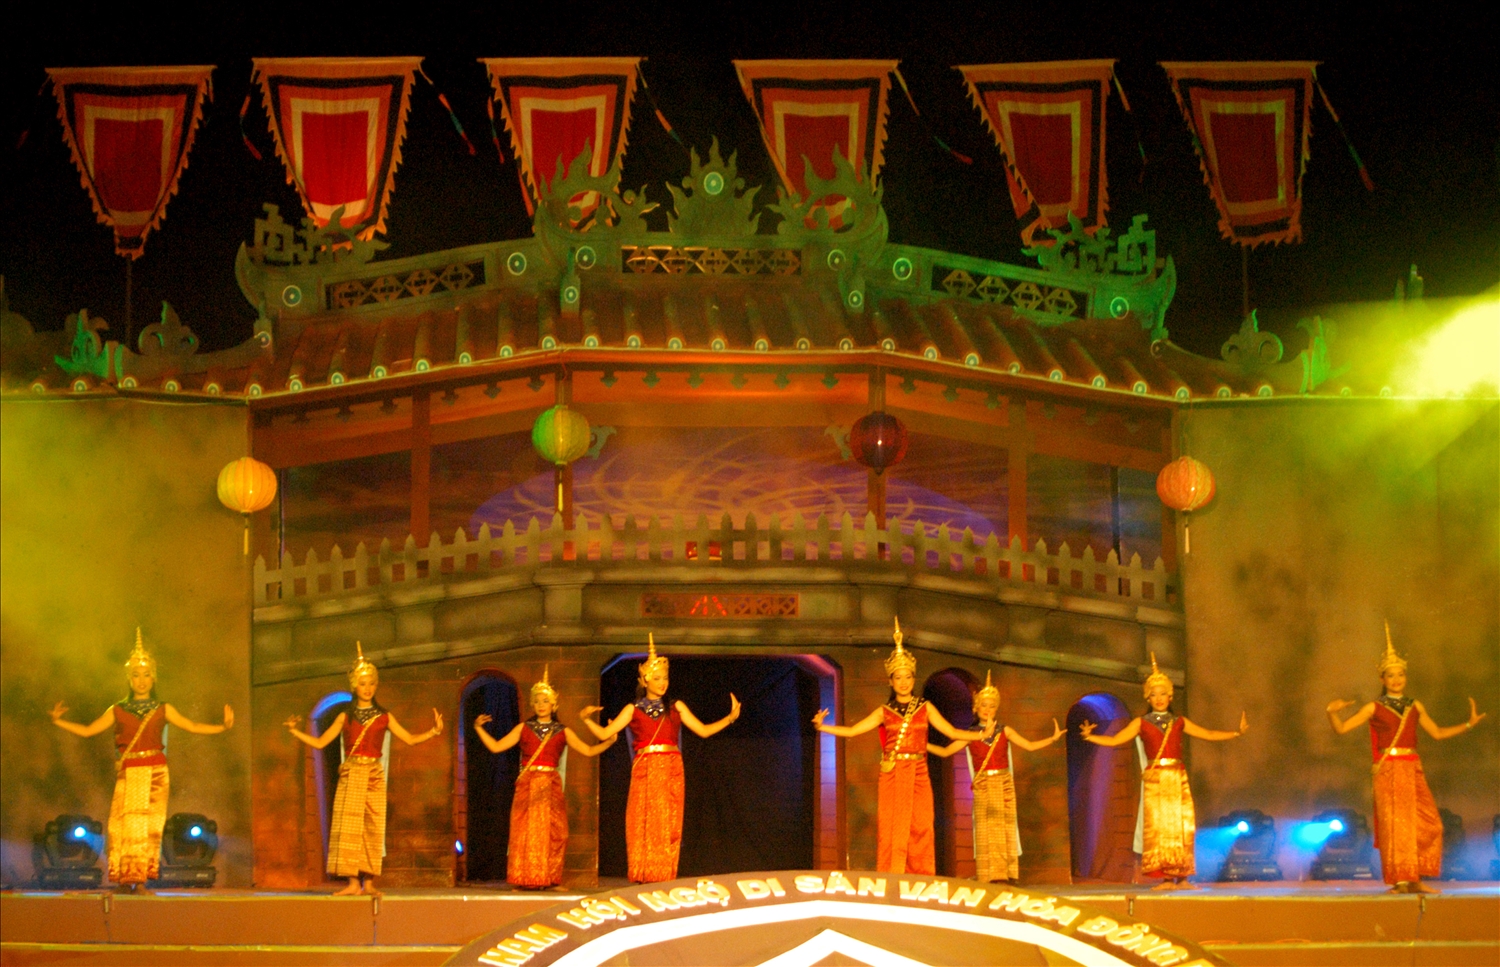 Đoàn nghệ thuật cố đô Luang Brabang biểu diễn vũ điệu cung đình tại Đô thị cổ Hội An (Quảng Nam)